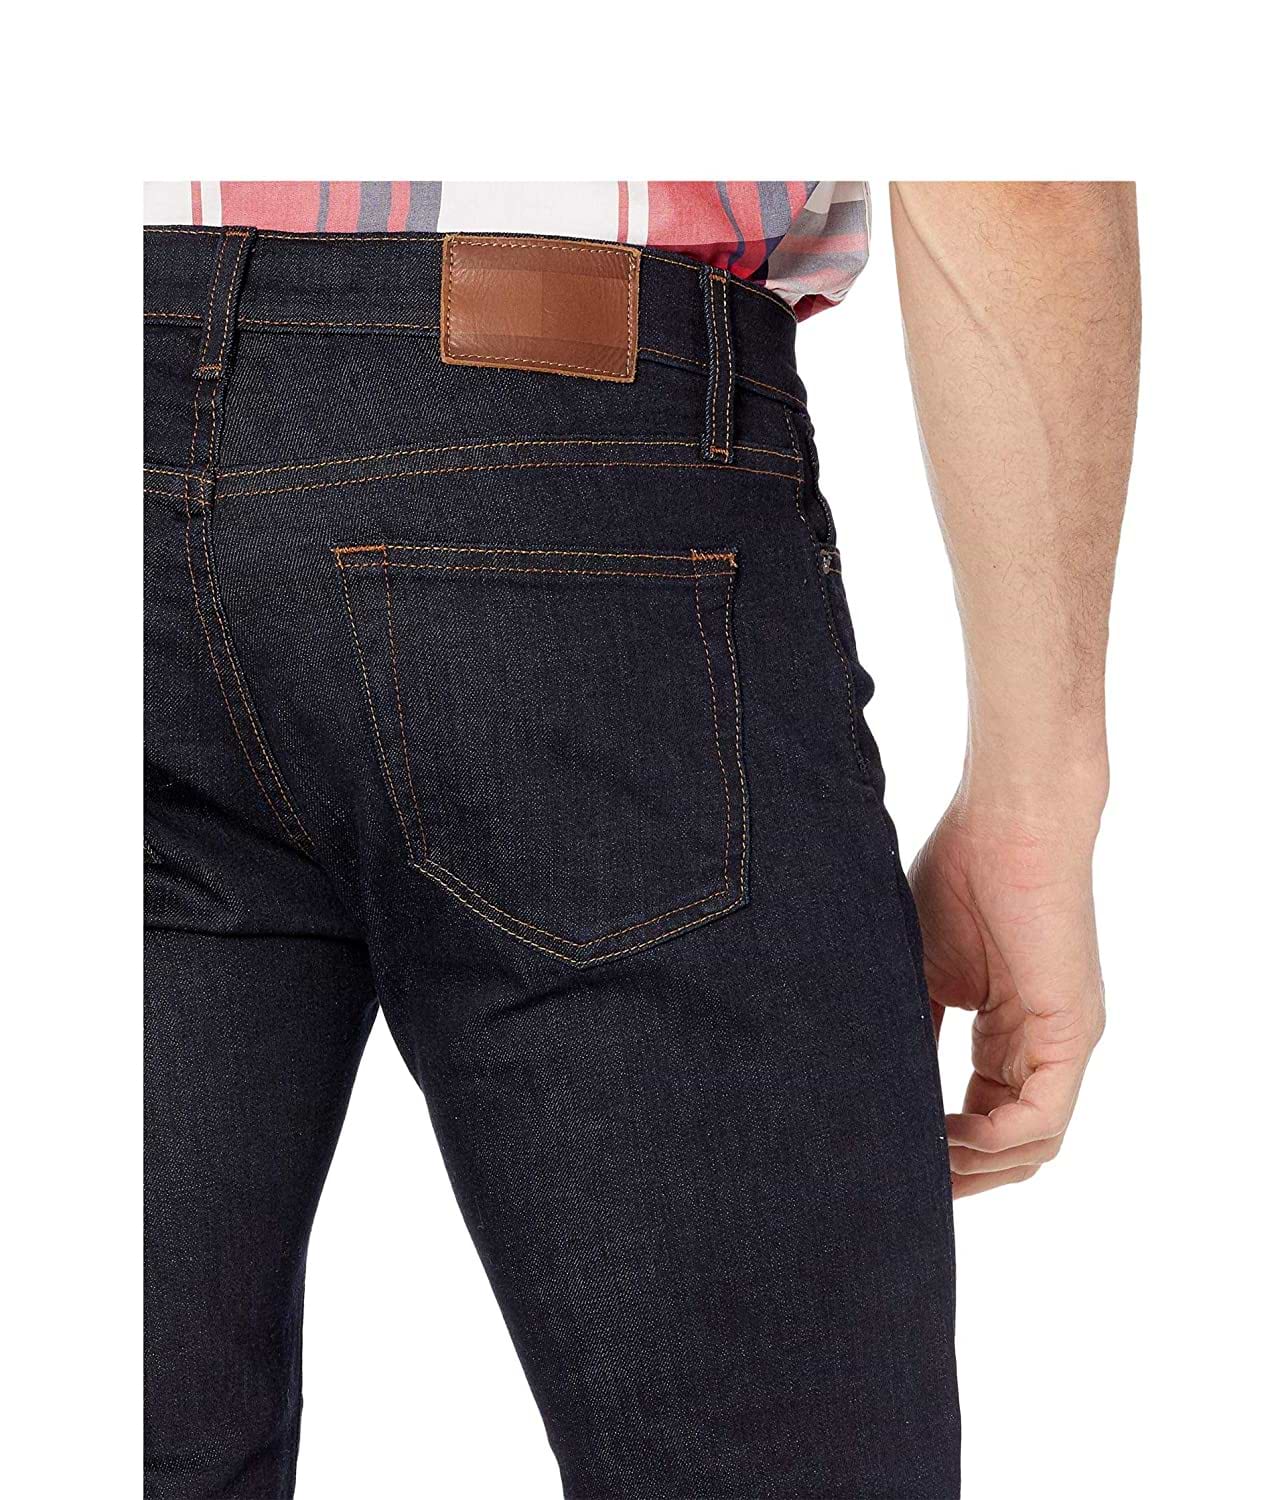 ג'ינס לגבר דגם Slim Fit Stretch מידה 38 צבע כחול Tommy Hilfiger - יבואן מקביל